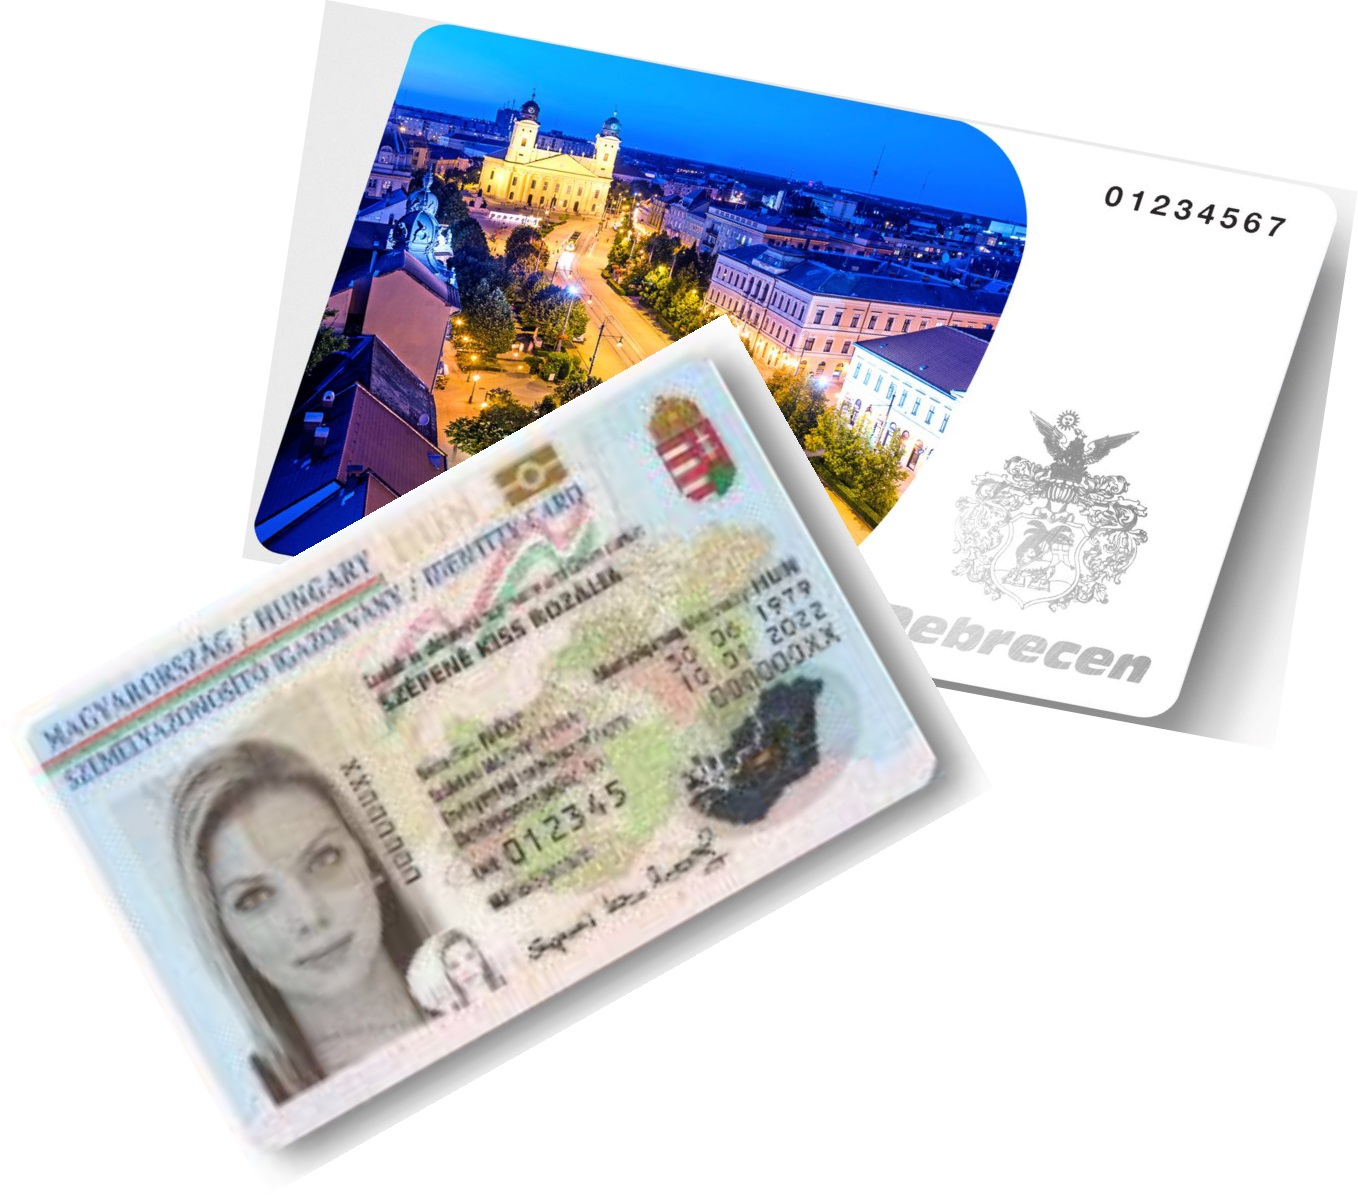 Kártya típusú személyire, diákigazolványra és Debrecen Városkártyára is megvásárolható. Kattintson a részletekre!